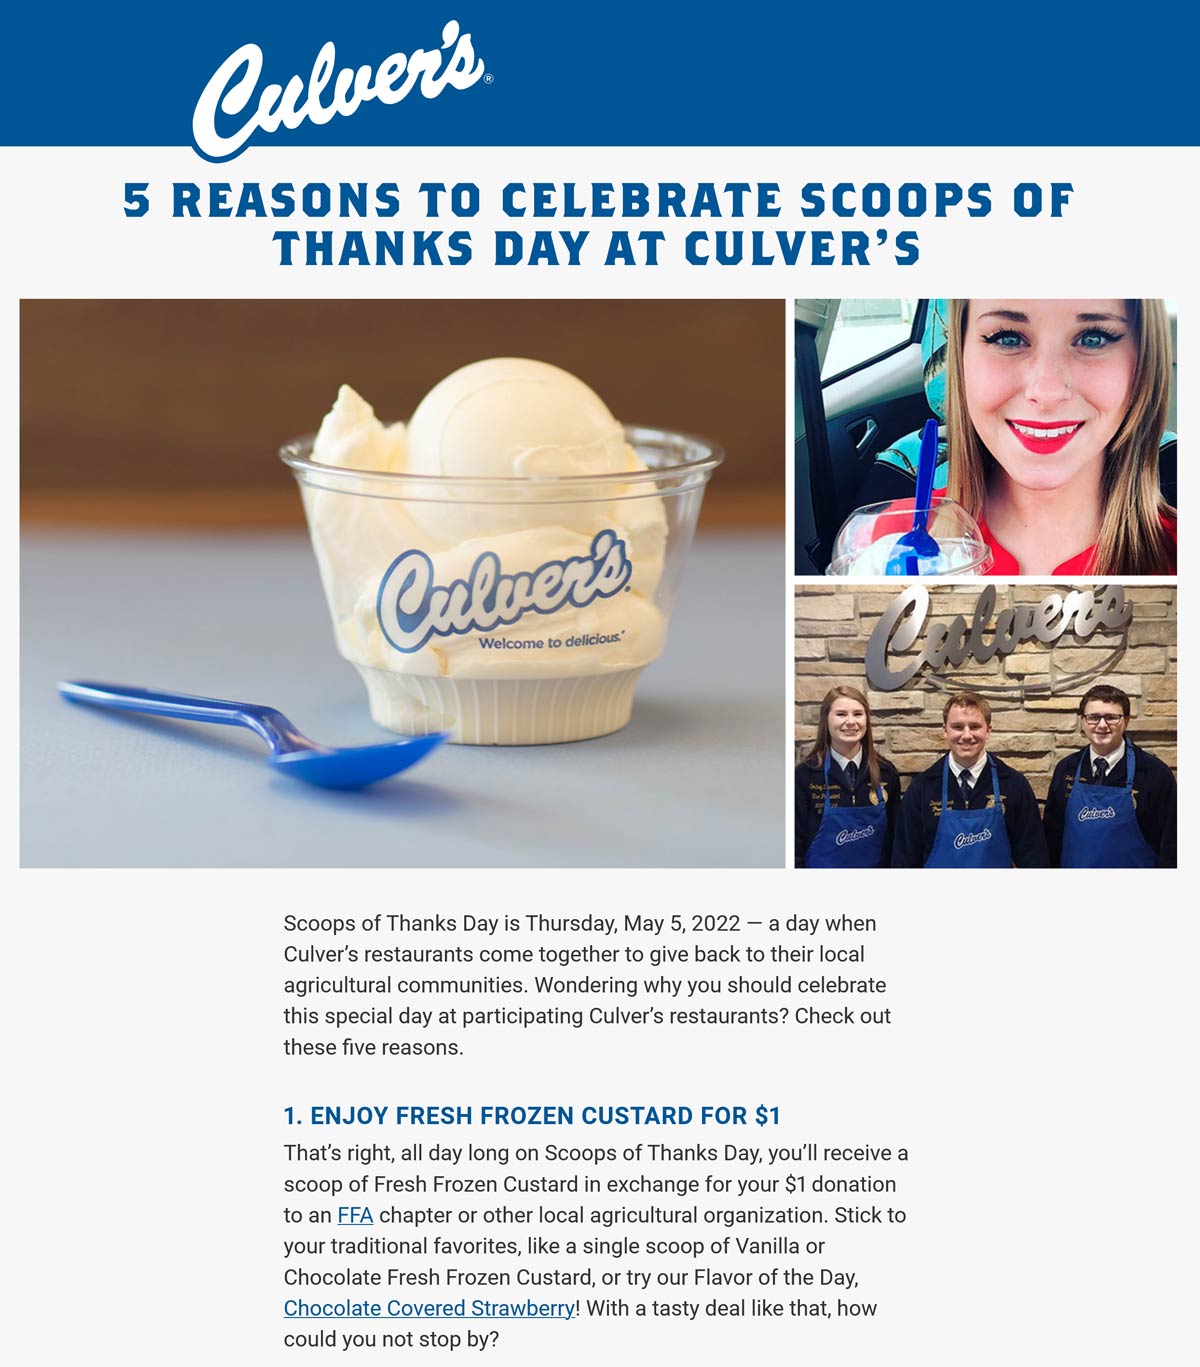 Culvers restaurants Coupon  $1 scoops of frozen custard today at Culvers restaurants #culvers 